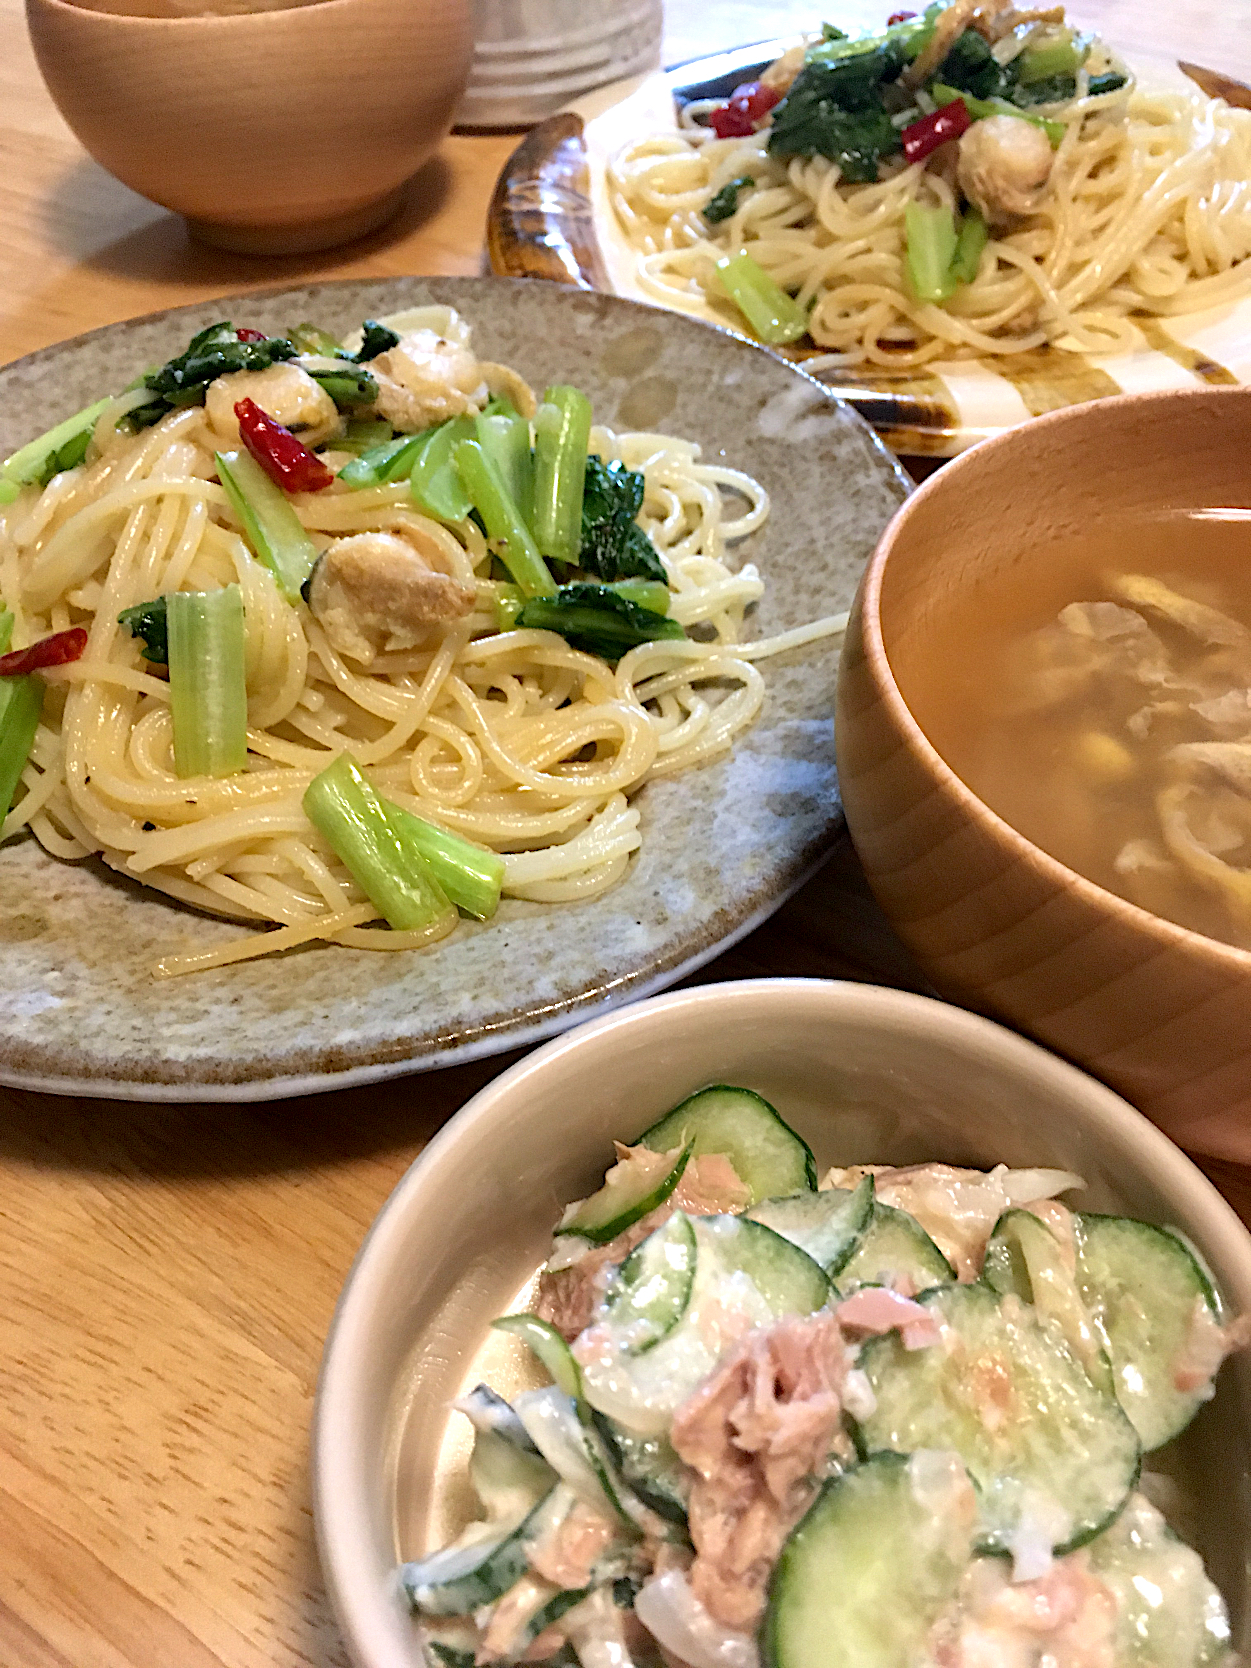 昨日の晩御飯〜帆立と小松菜のペペロンチーノ🌶、ツナサラダ、野菜だしの卵スープ( ´͈ ᗨ `͈ )◞♡⃛